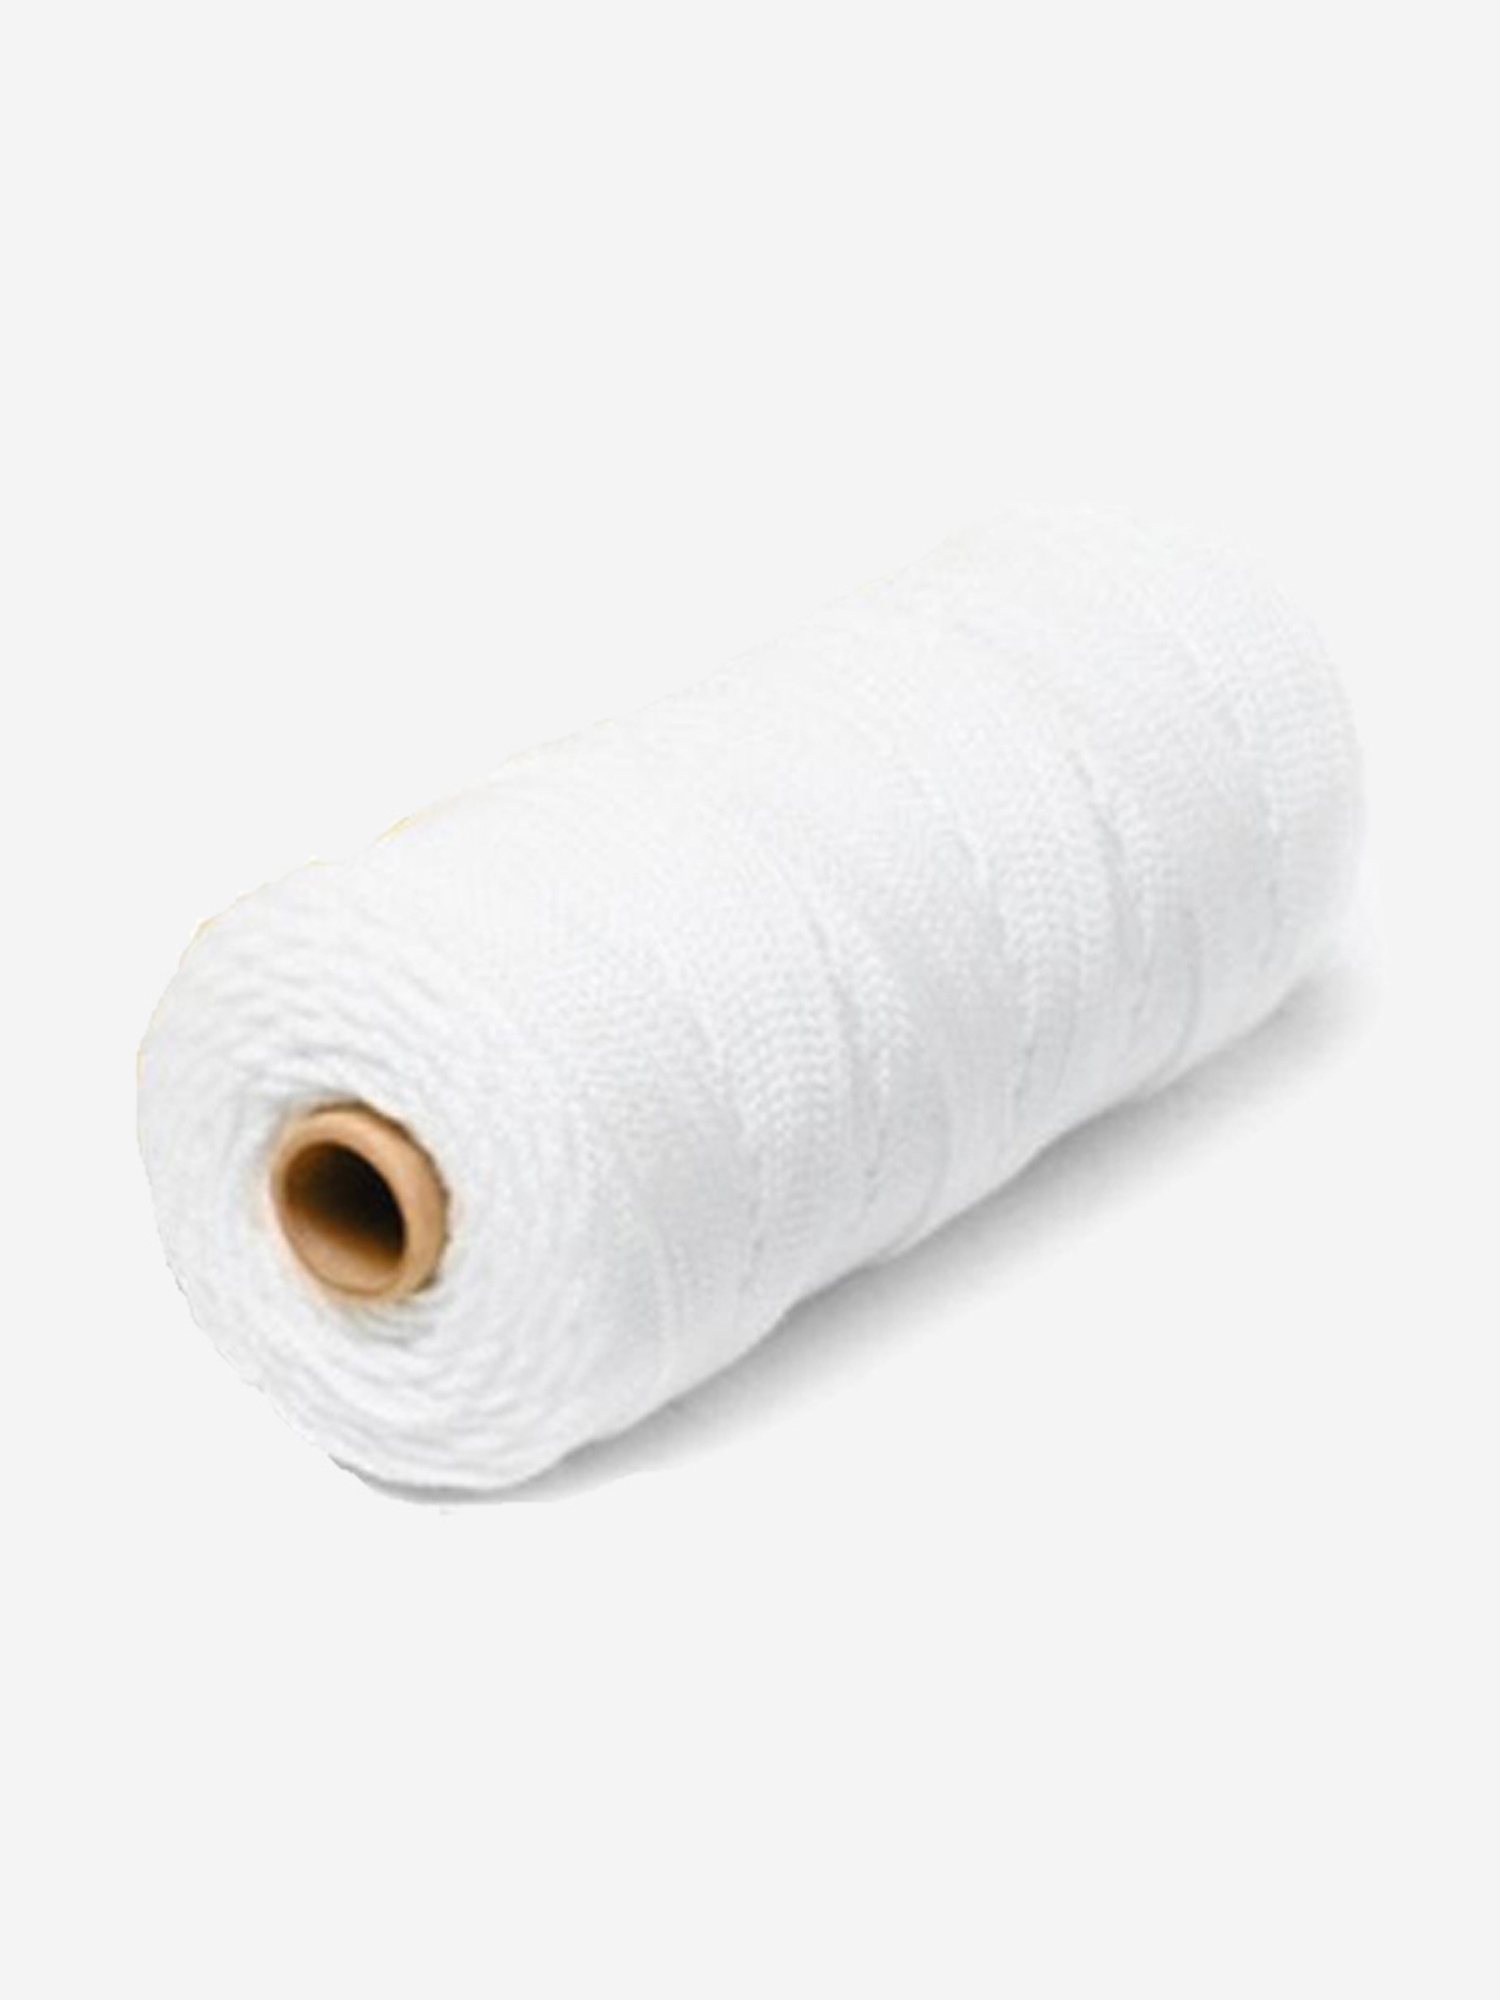 Шнур плетеный Петроканат СТАНДАРТ 12,0 мм (200 м) белый, п/п мешок (промышленный/крепежный), Белый